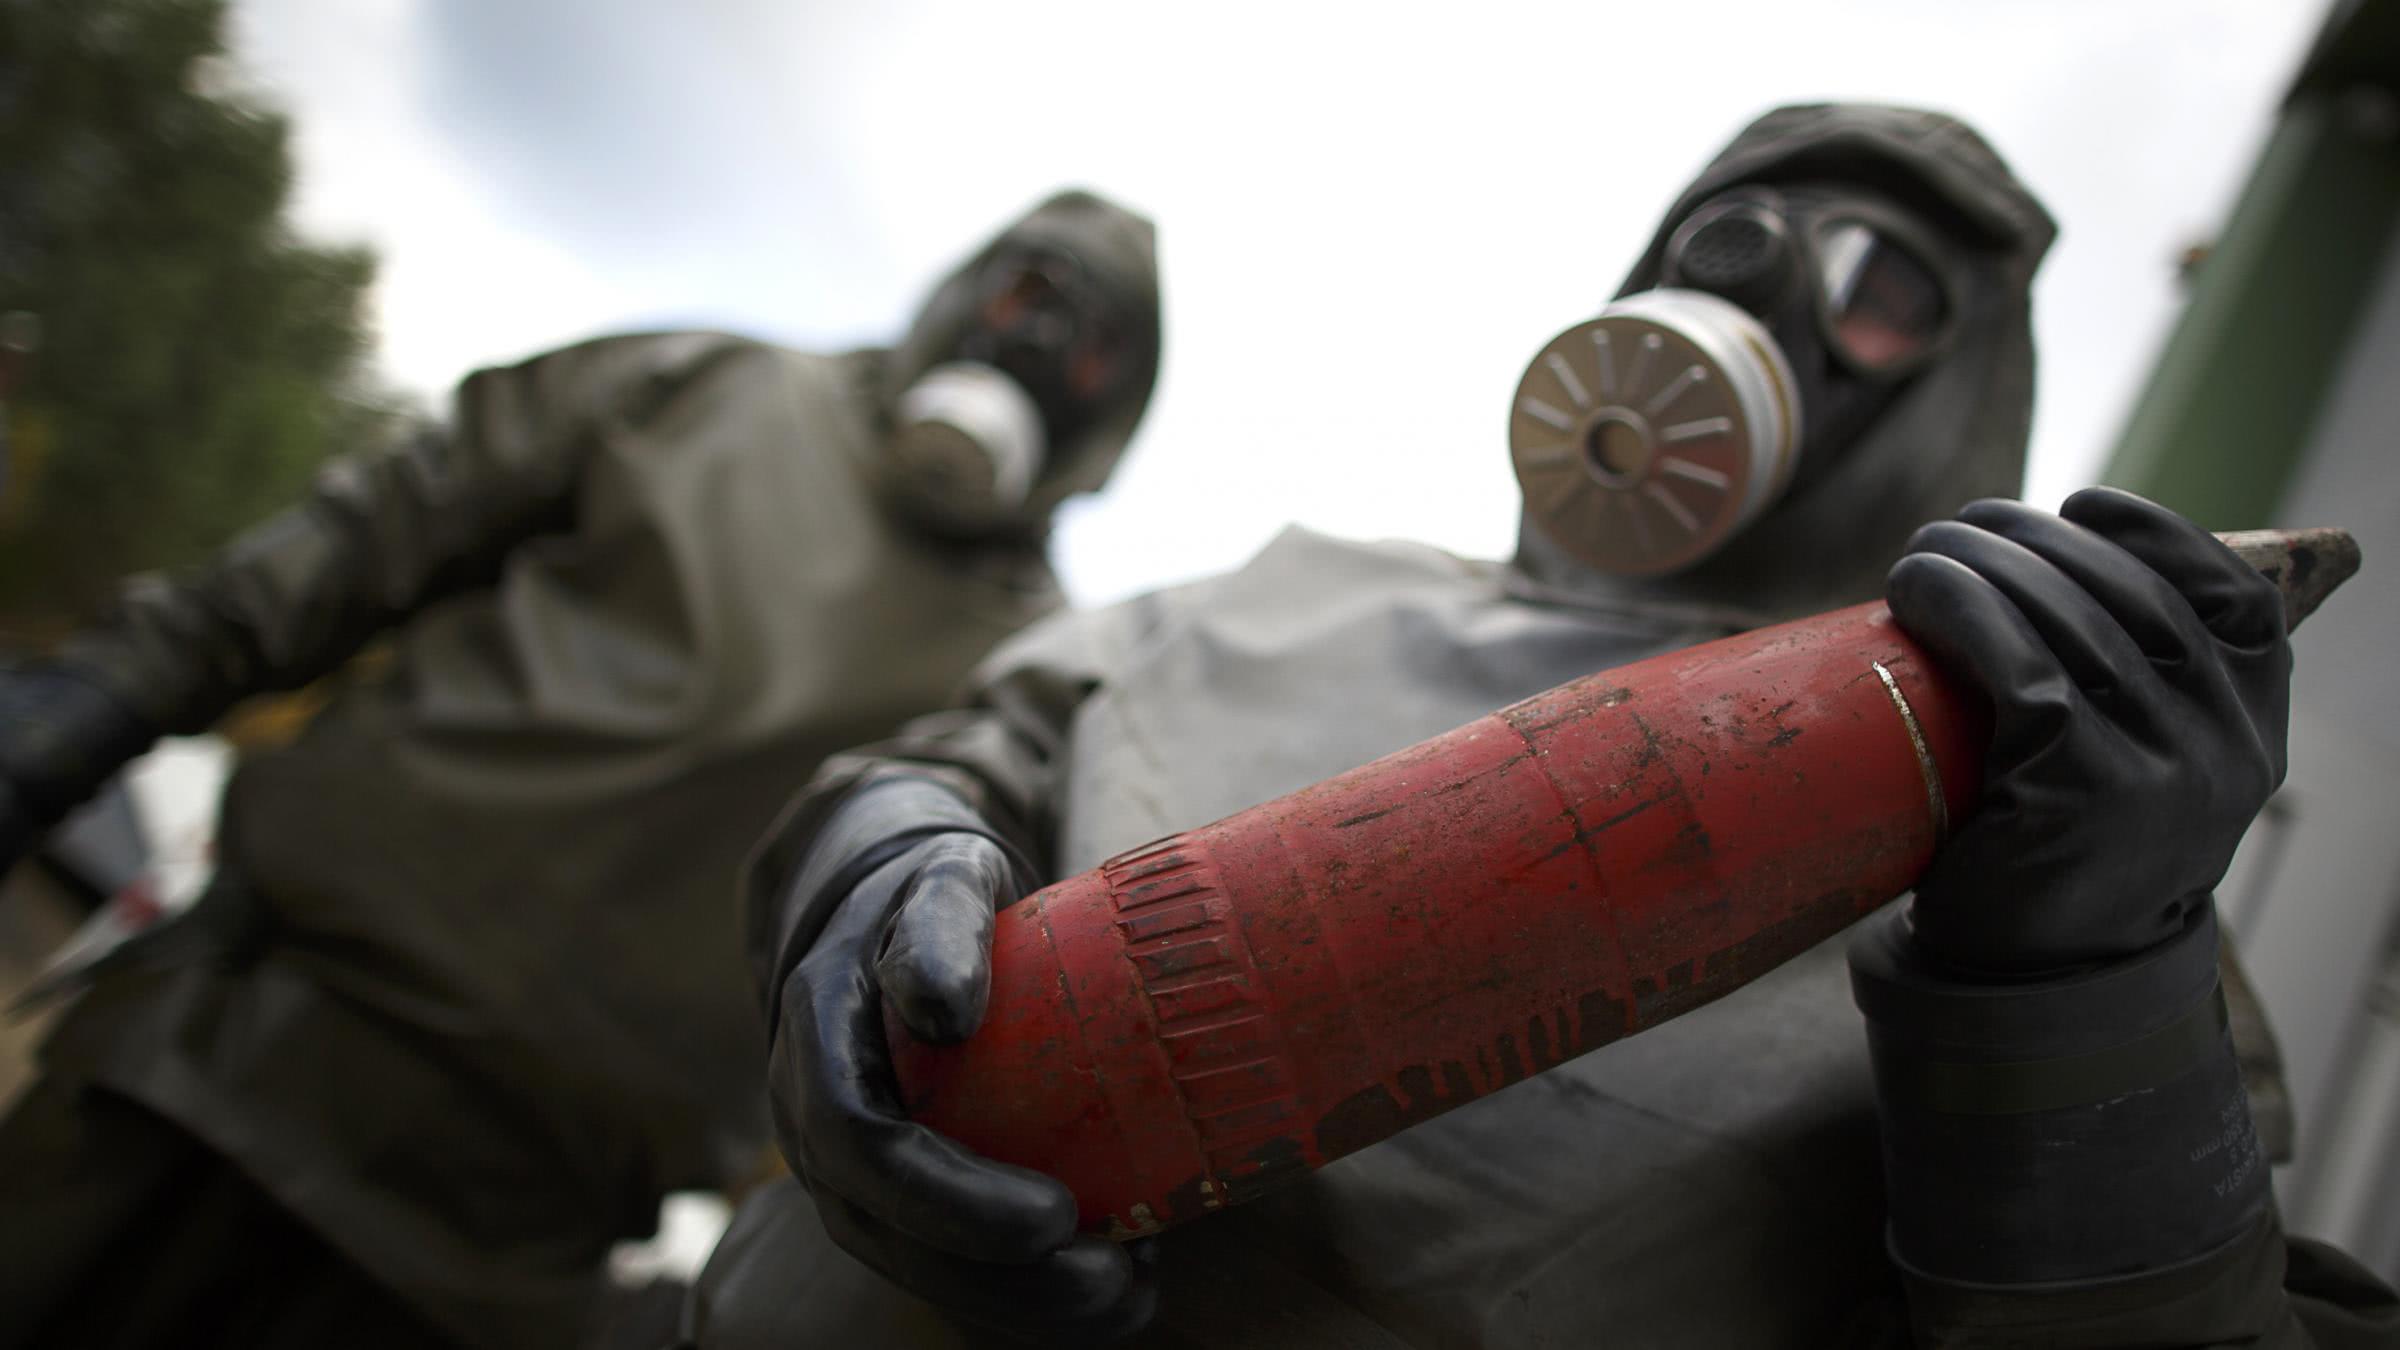 目前这些20多吨的化学武器及其原料已经被叙利亚政府派人拿去销毁,并